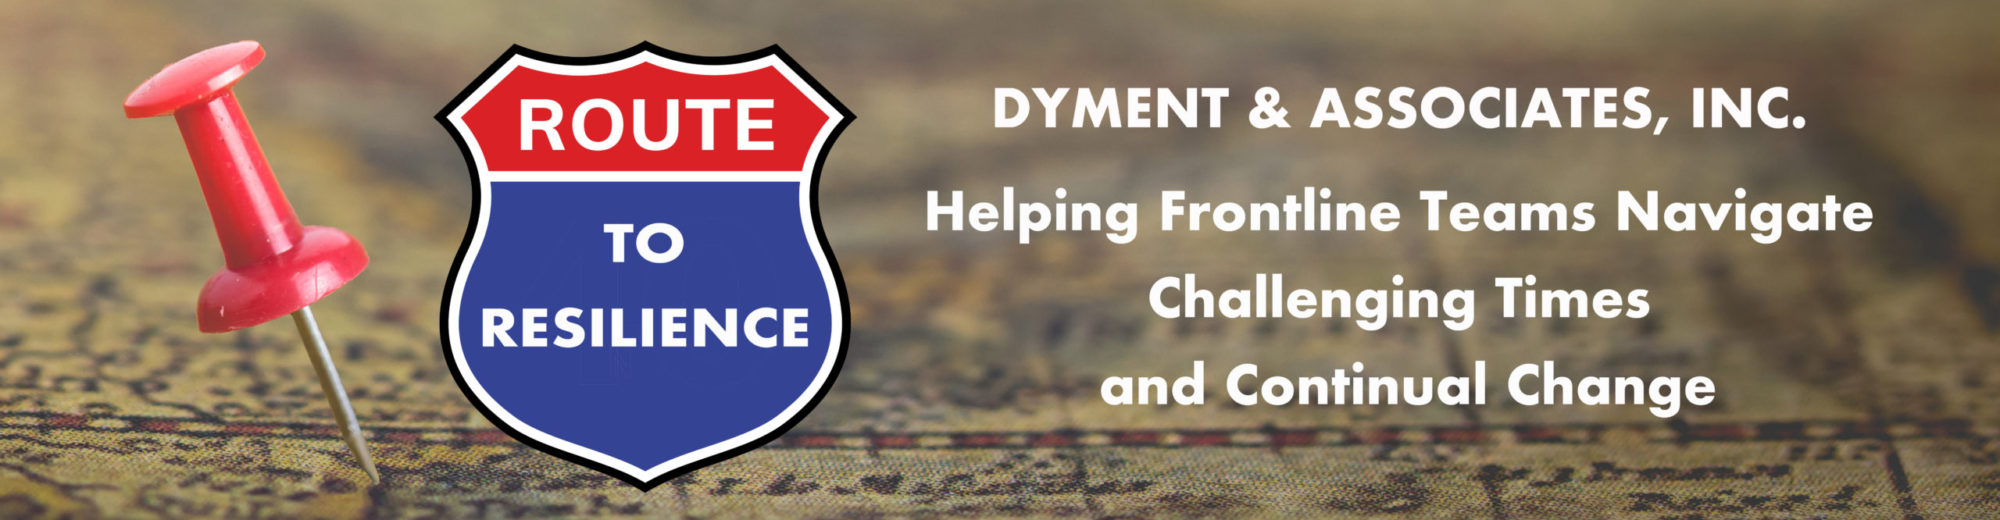 Dr. Bill Dyment / Dyment & Associates, Inc.